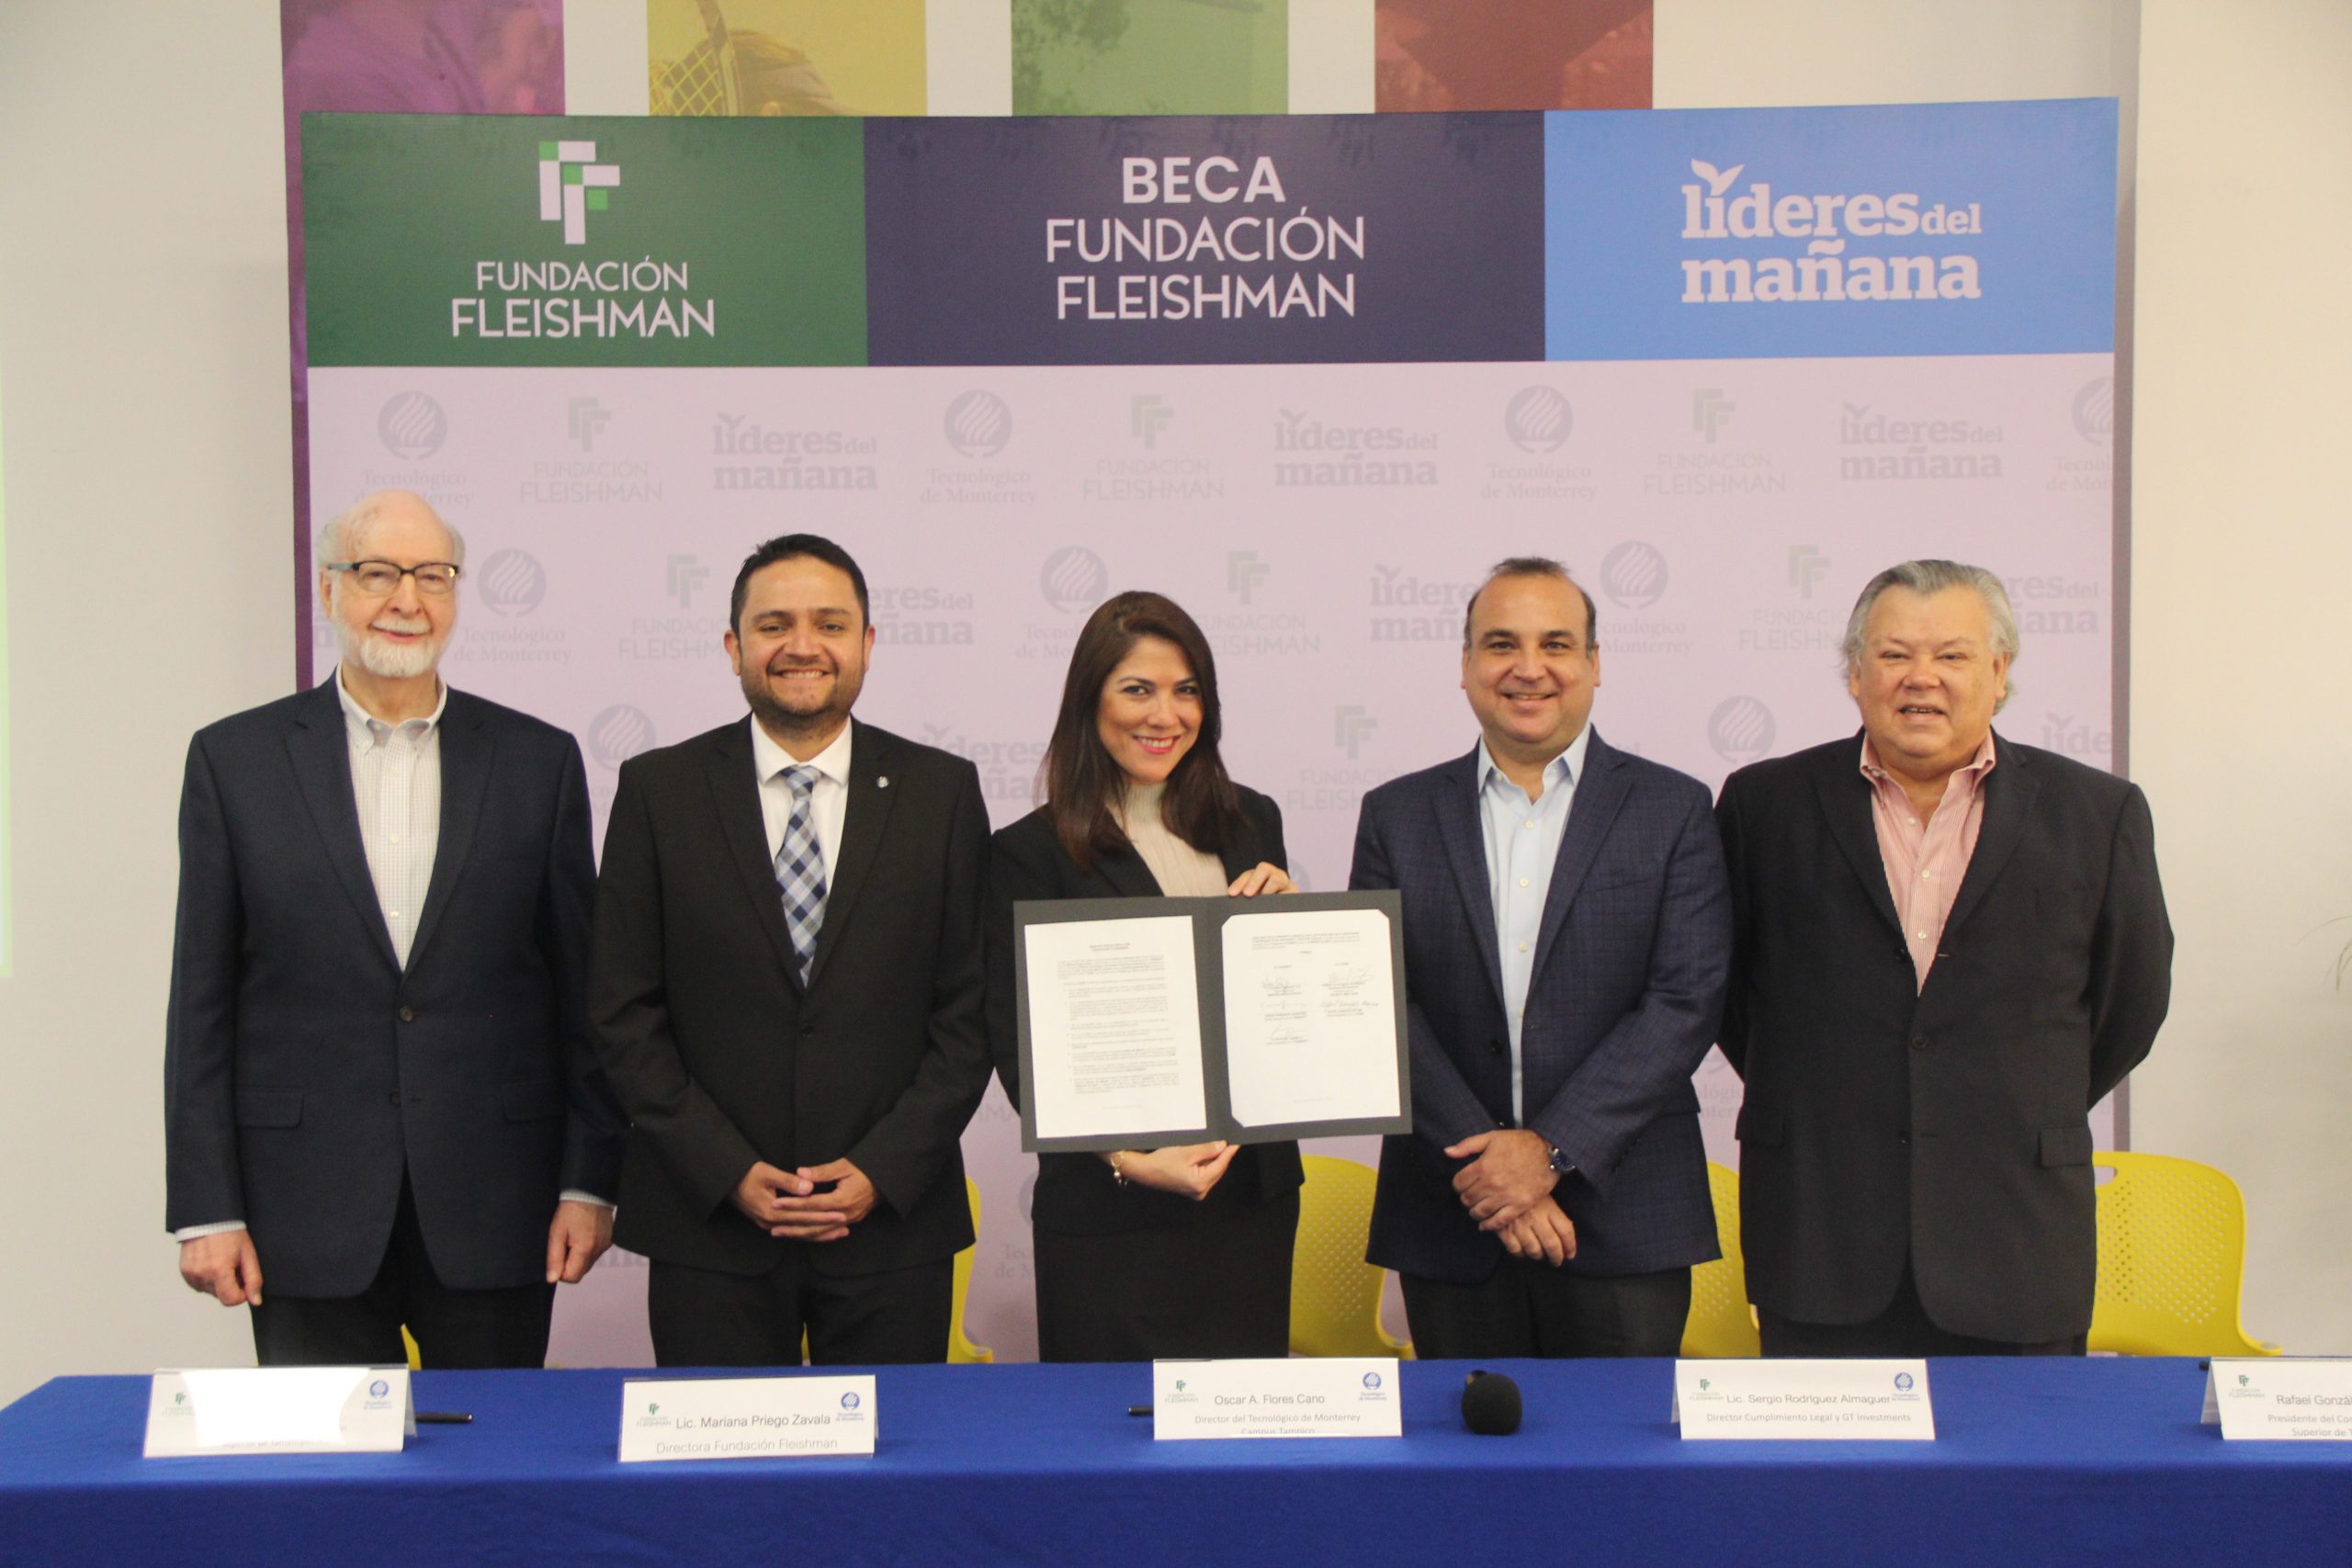 Fundación Fleishman continúa impulsando la educación, apoyando el Programa “Líderes del Mañana” del Tecnológico de Monterrey.